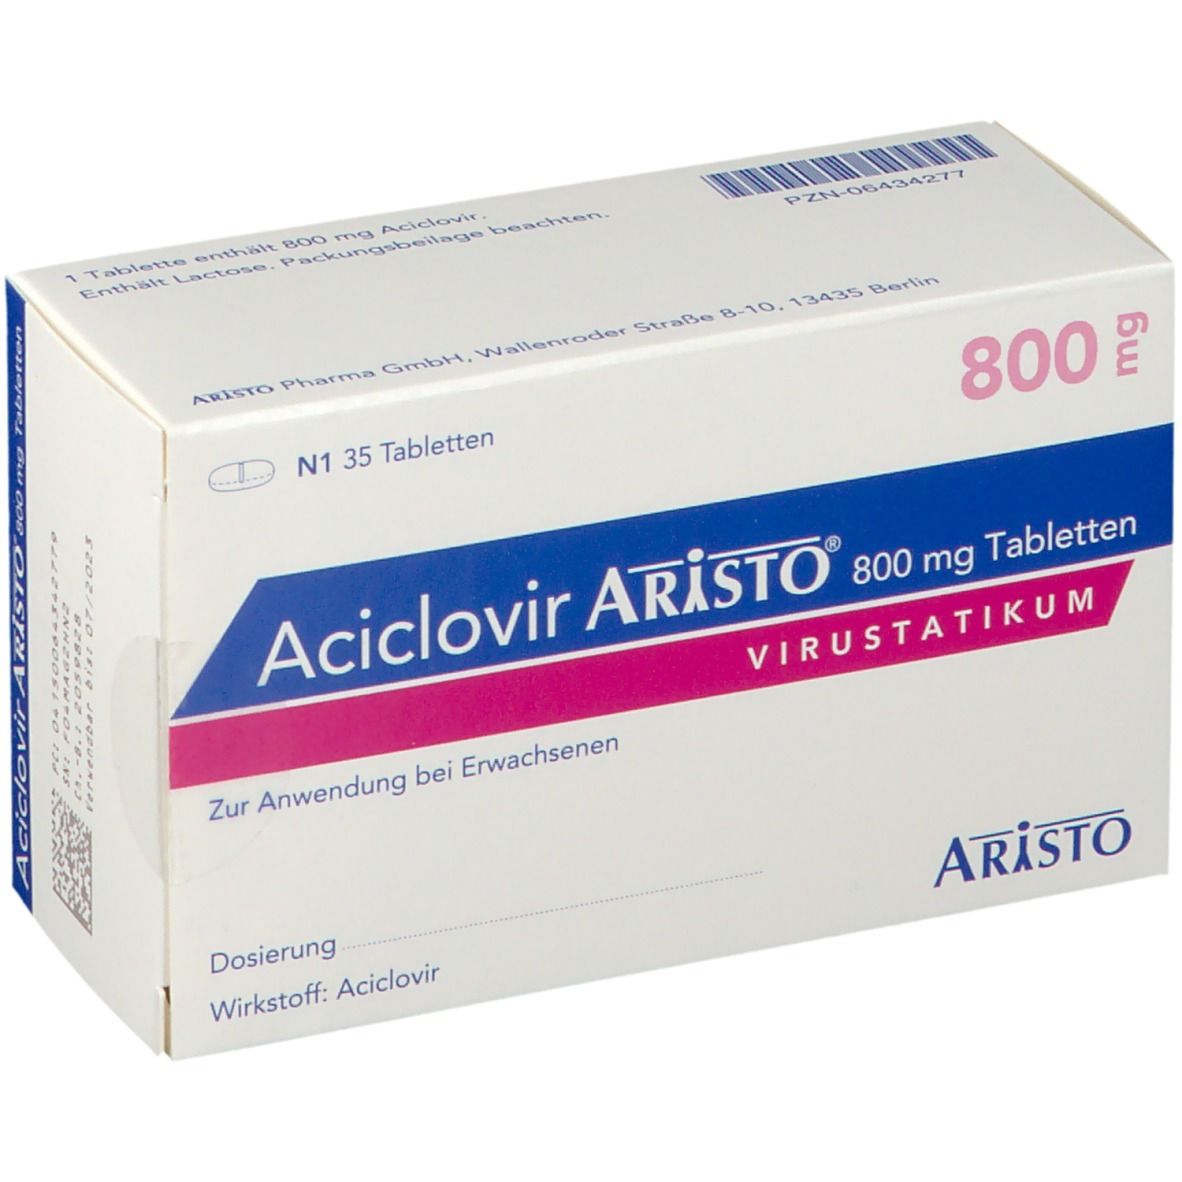 Aciclovir Aristo® 800 mg